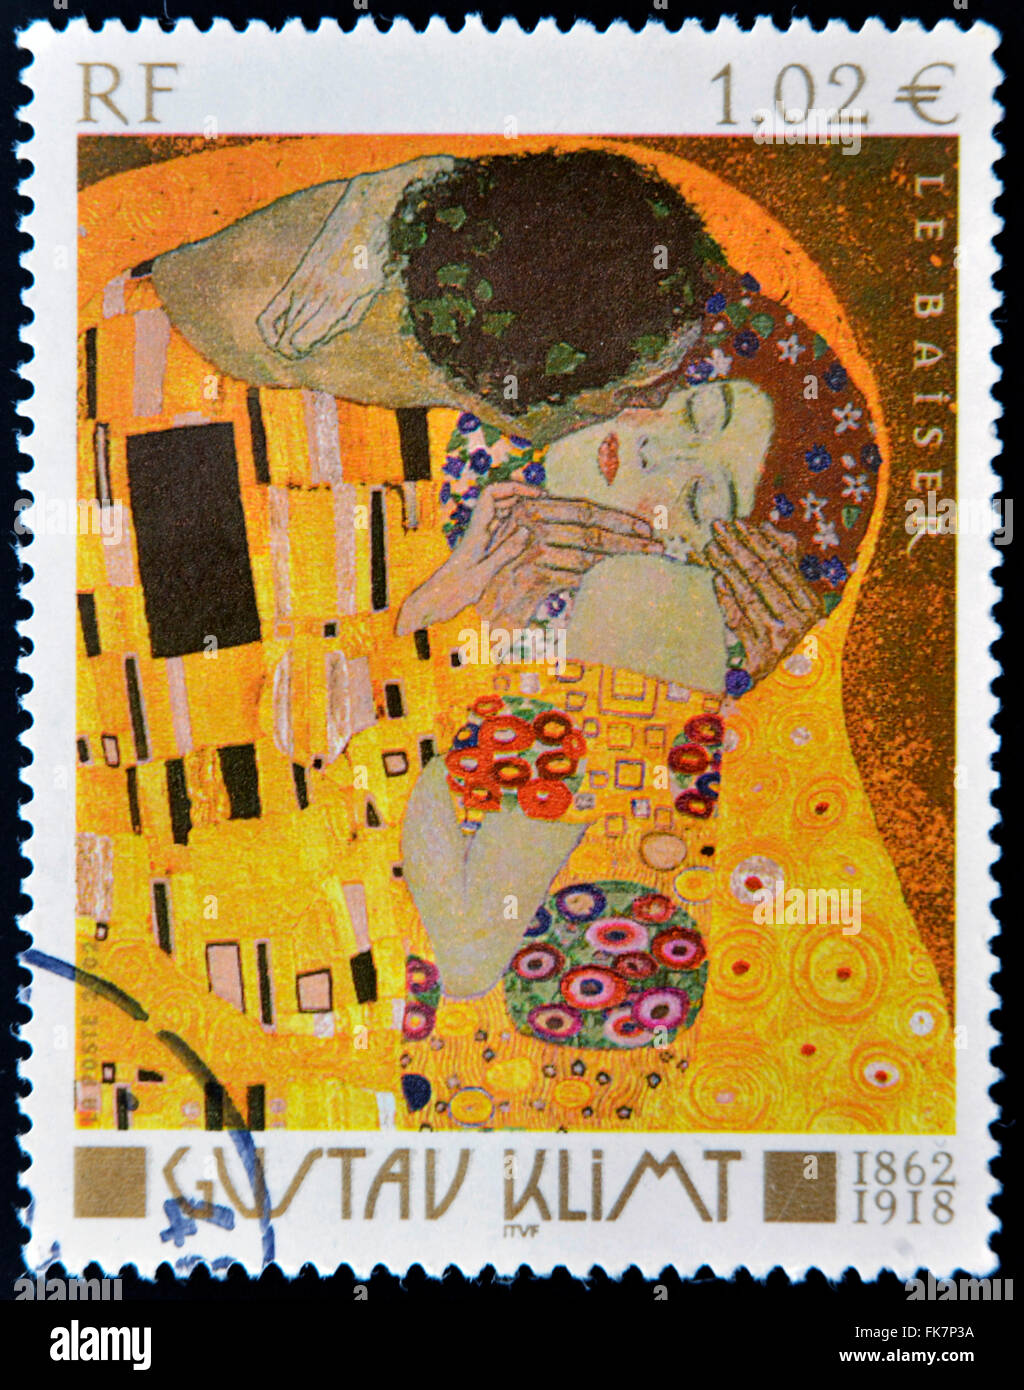 Francia - circa 2002: timbro stampato in Francia mostra famoso dipinto il bacio (Le Baiser) dall austriaco pittore simbolista Gustav Klimt Foto Stock